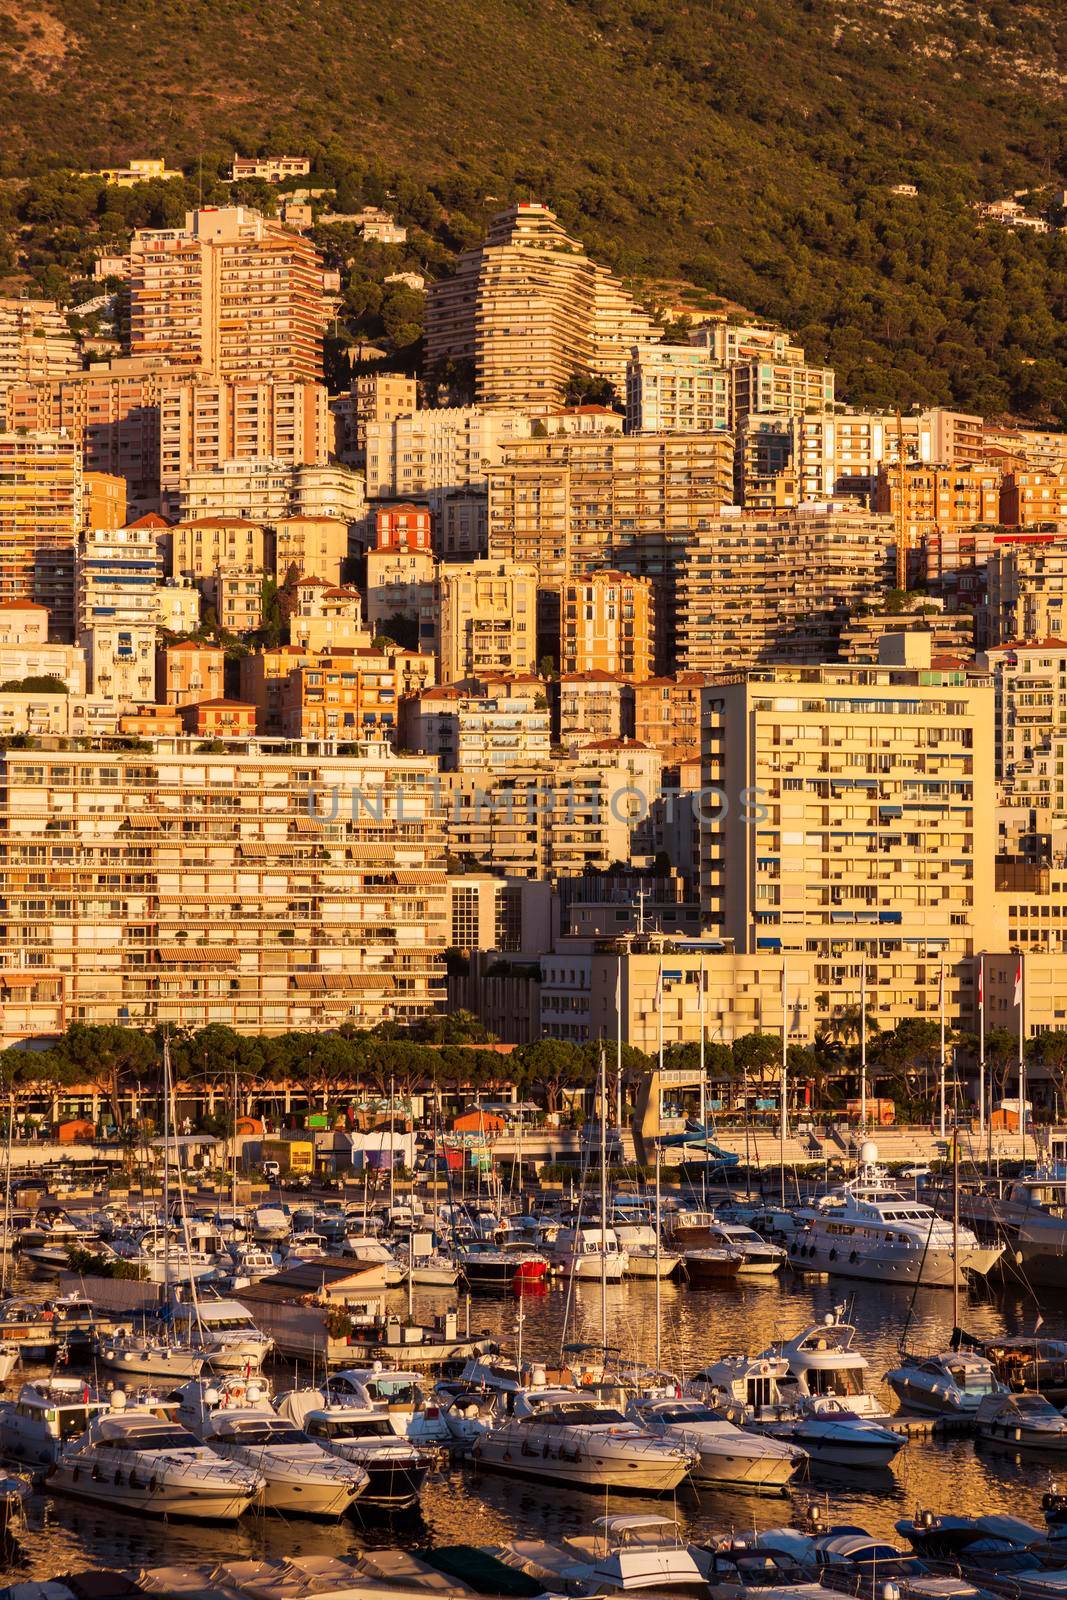 Sunrise in Monaco from the harbor. Monte Carlo, Monaco.